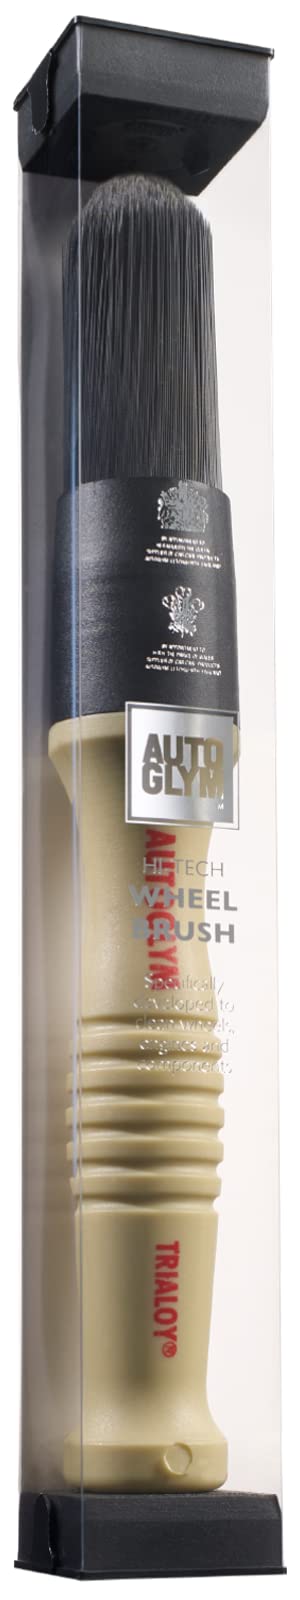 Autoglym Hi-Tech Felgenbürste, Reinigungsbürste für die Reinigung von Alufelgen, Automotoren und Anderen Fahrzeugteilen, Chemisch Resistente Hochleistungs-Synthetikfasern für Hohe Belastungen